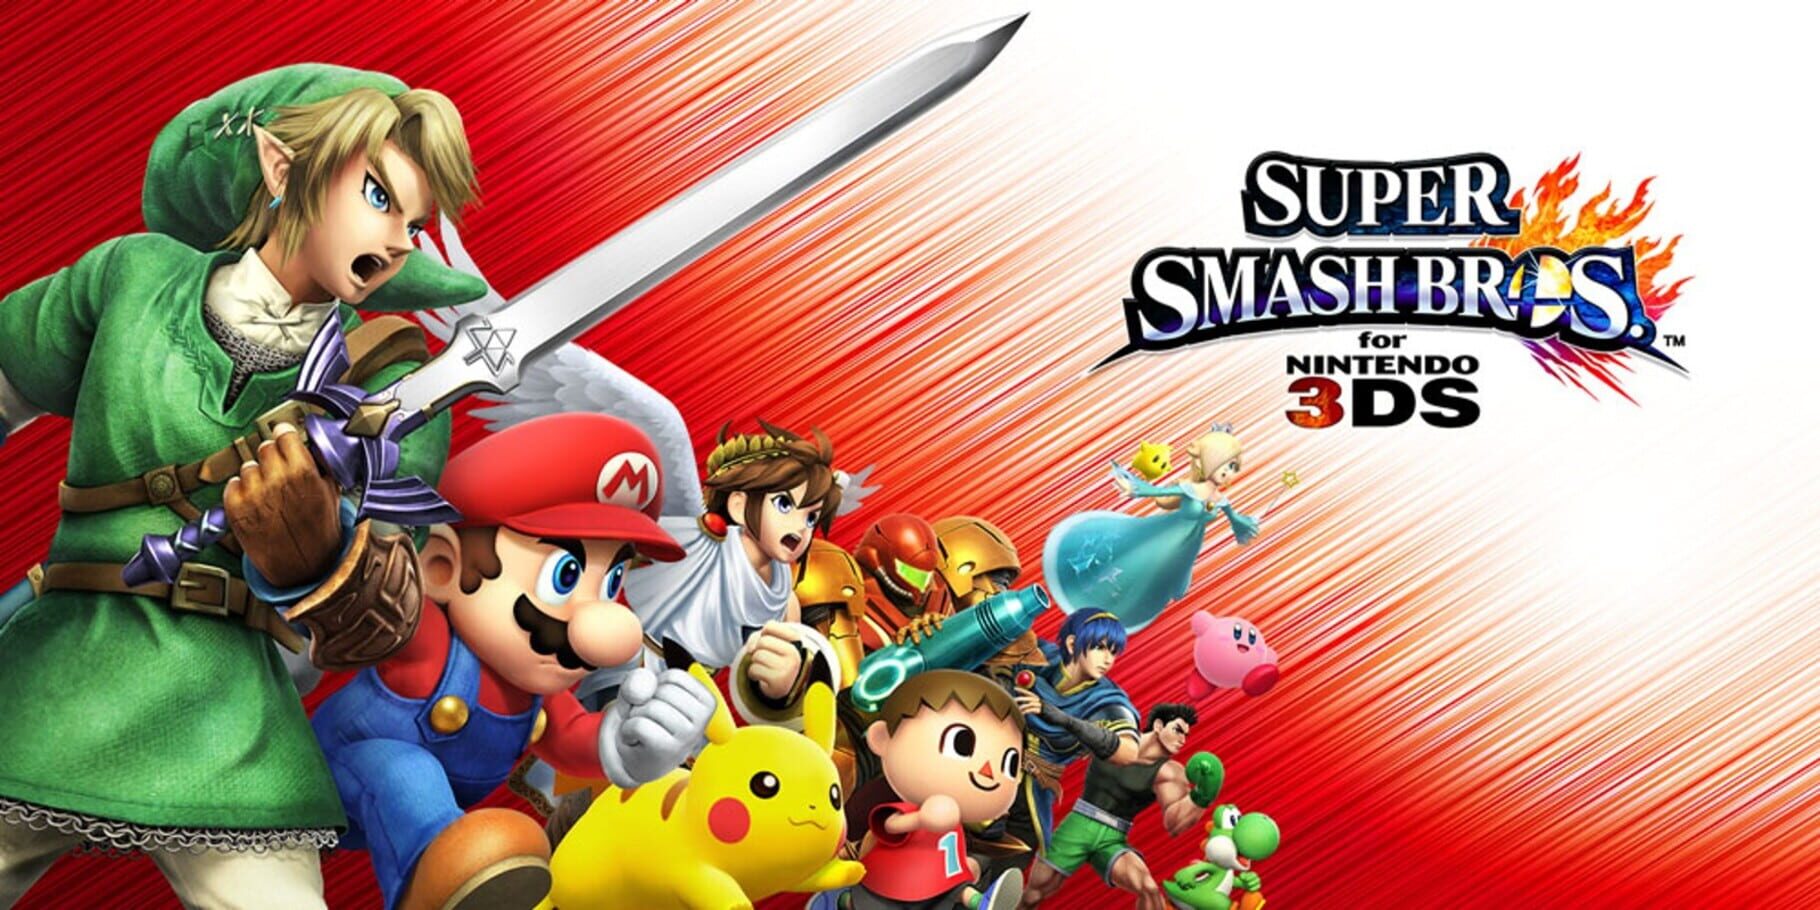 Artwork for Super Smash Bros. for Nintendo 3DS